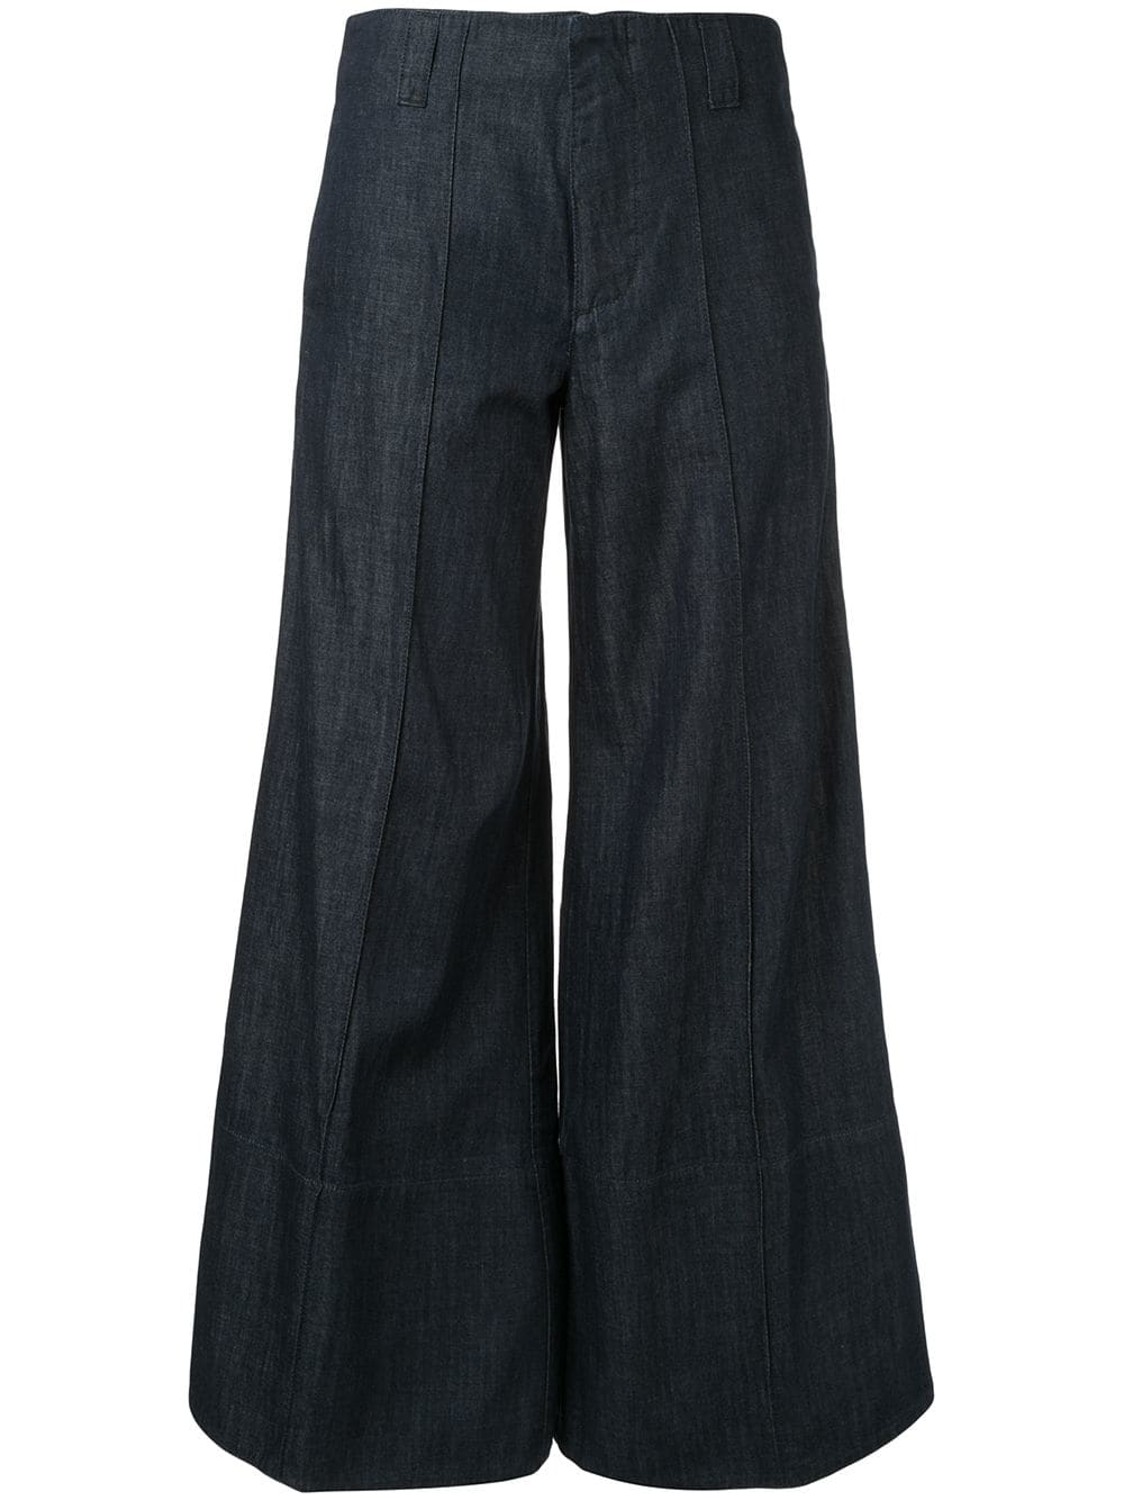 shop Marni  Pantaloni: Pantalone Marni, jeans, modello ampio, vita alta, chiusura sul davanti con cerniera e bottoni, tasche sul davanti e dietro.

Composizione: 100% cotone. number 1401